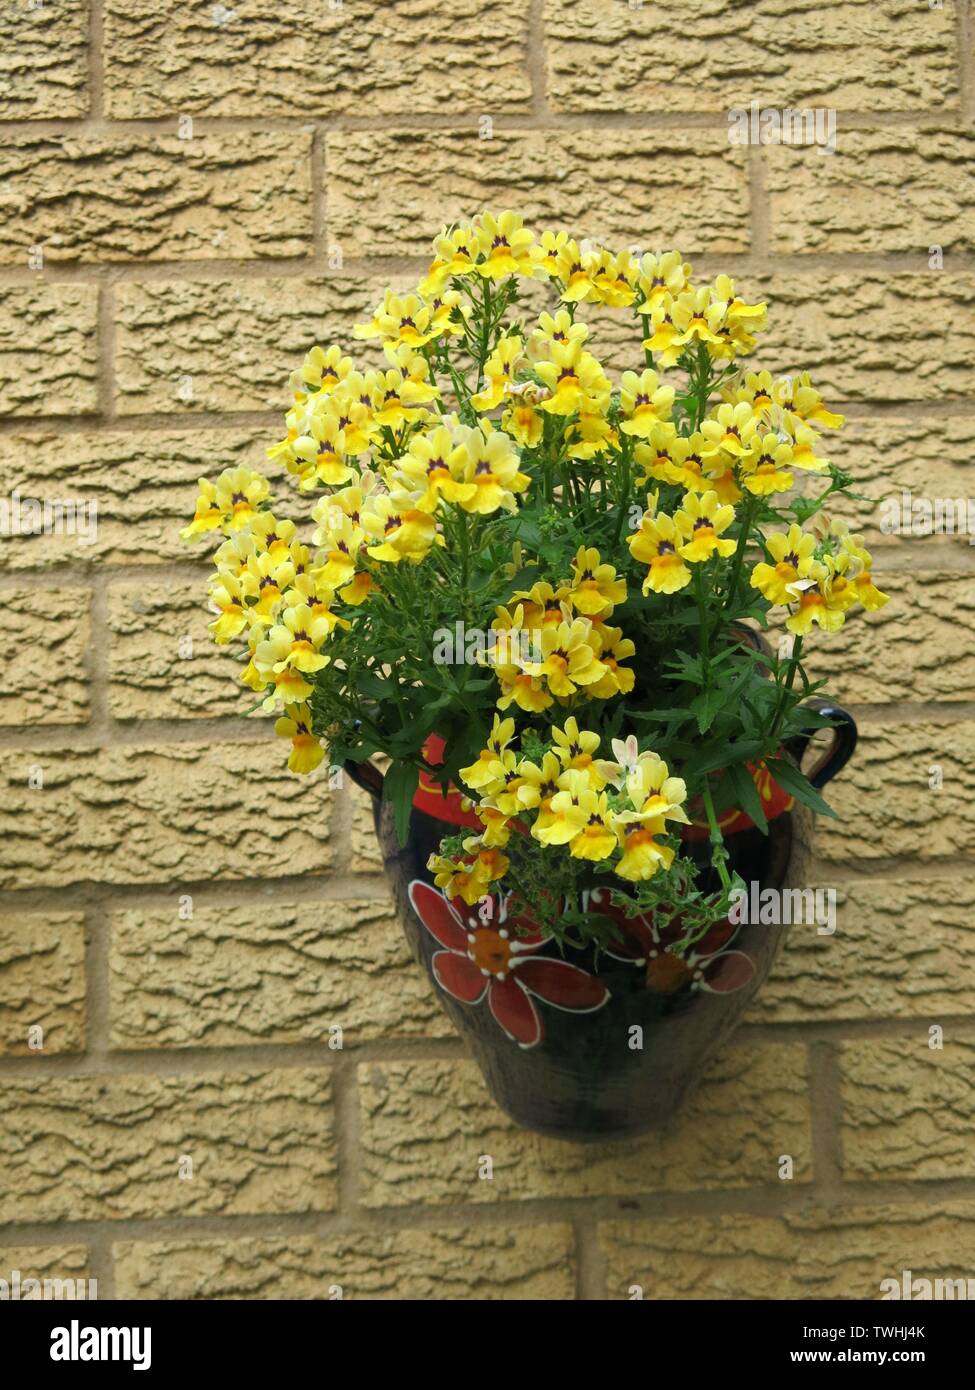 Nemesia 'Sunshine' ist ein Spritzen der helle gelbe Farbe im Frühsommer, in einem Topf hängen auf einer hellen Wand gepflanzt: Ein englischer Garten, Juni 2019 Stockfoto